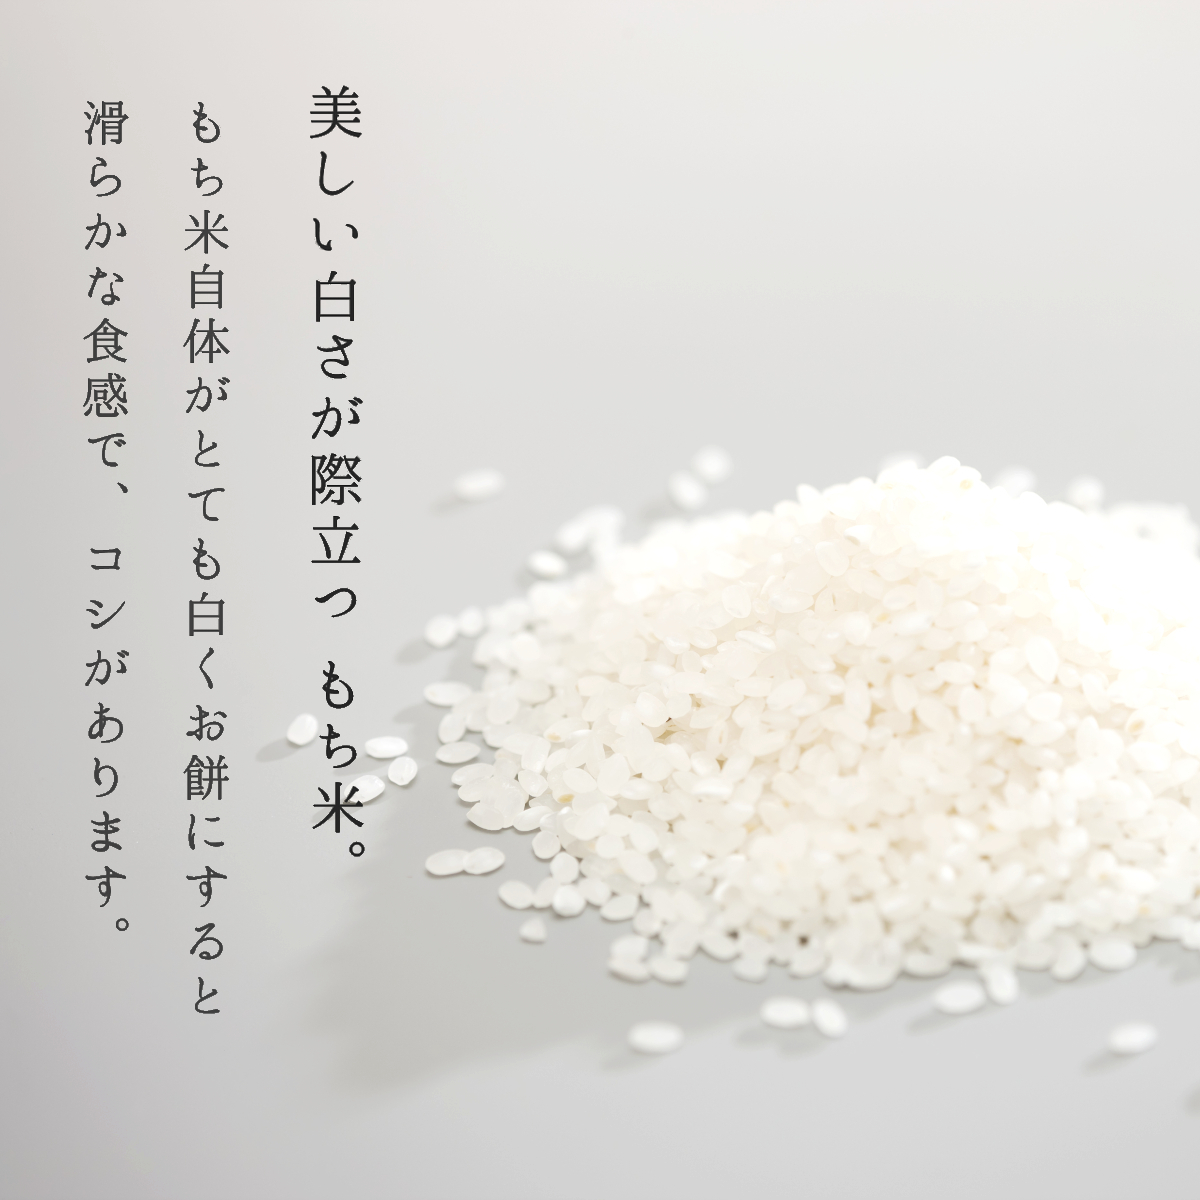  есть перевод новый рис . мир 5 год производство клейкий рис 10kg бесплатная доставка Yamagata префектура производство himenomochi. рис бесплатный 5kg×2 пакет рис . рис 20kg 30kg. в продаже 